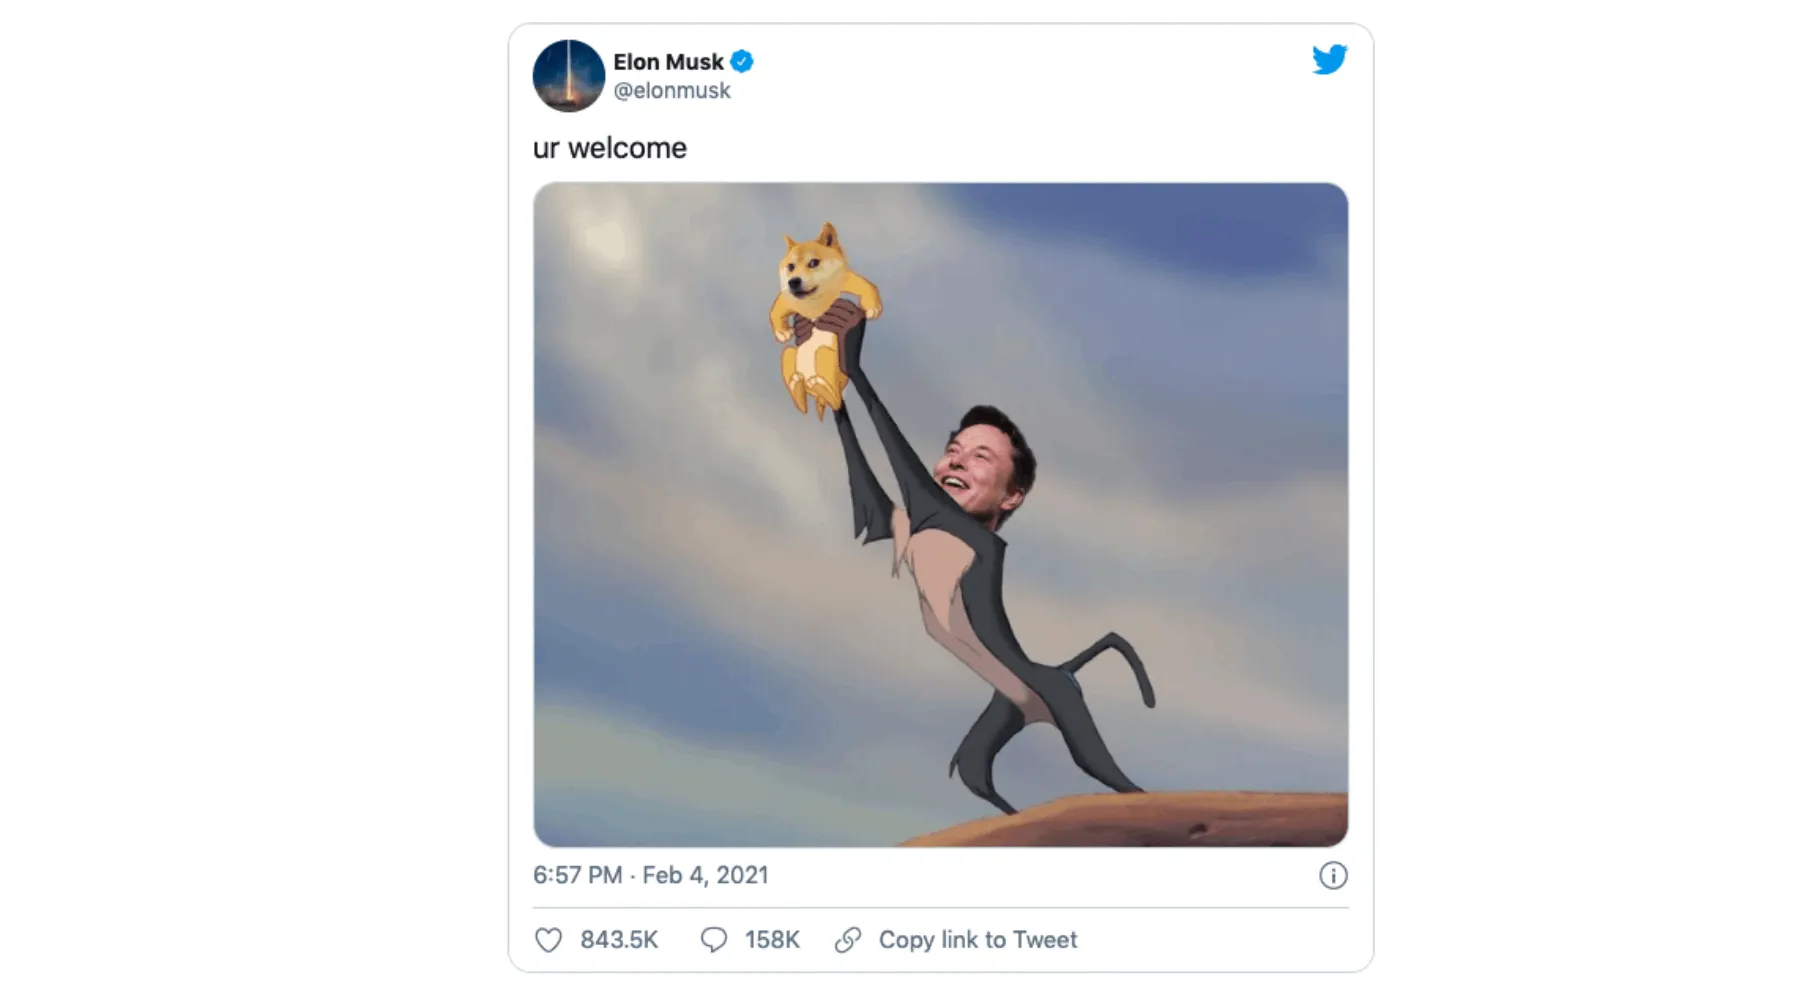 Фотография твита Илона Маска.  Это его фотошоп в сцене Короля Льва, где он держит собаку сиба-ину вместо льва.